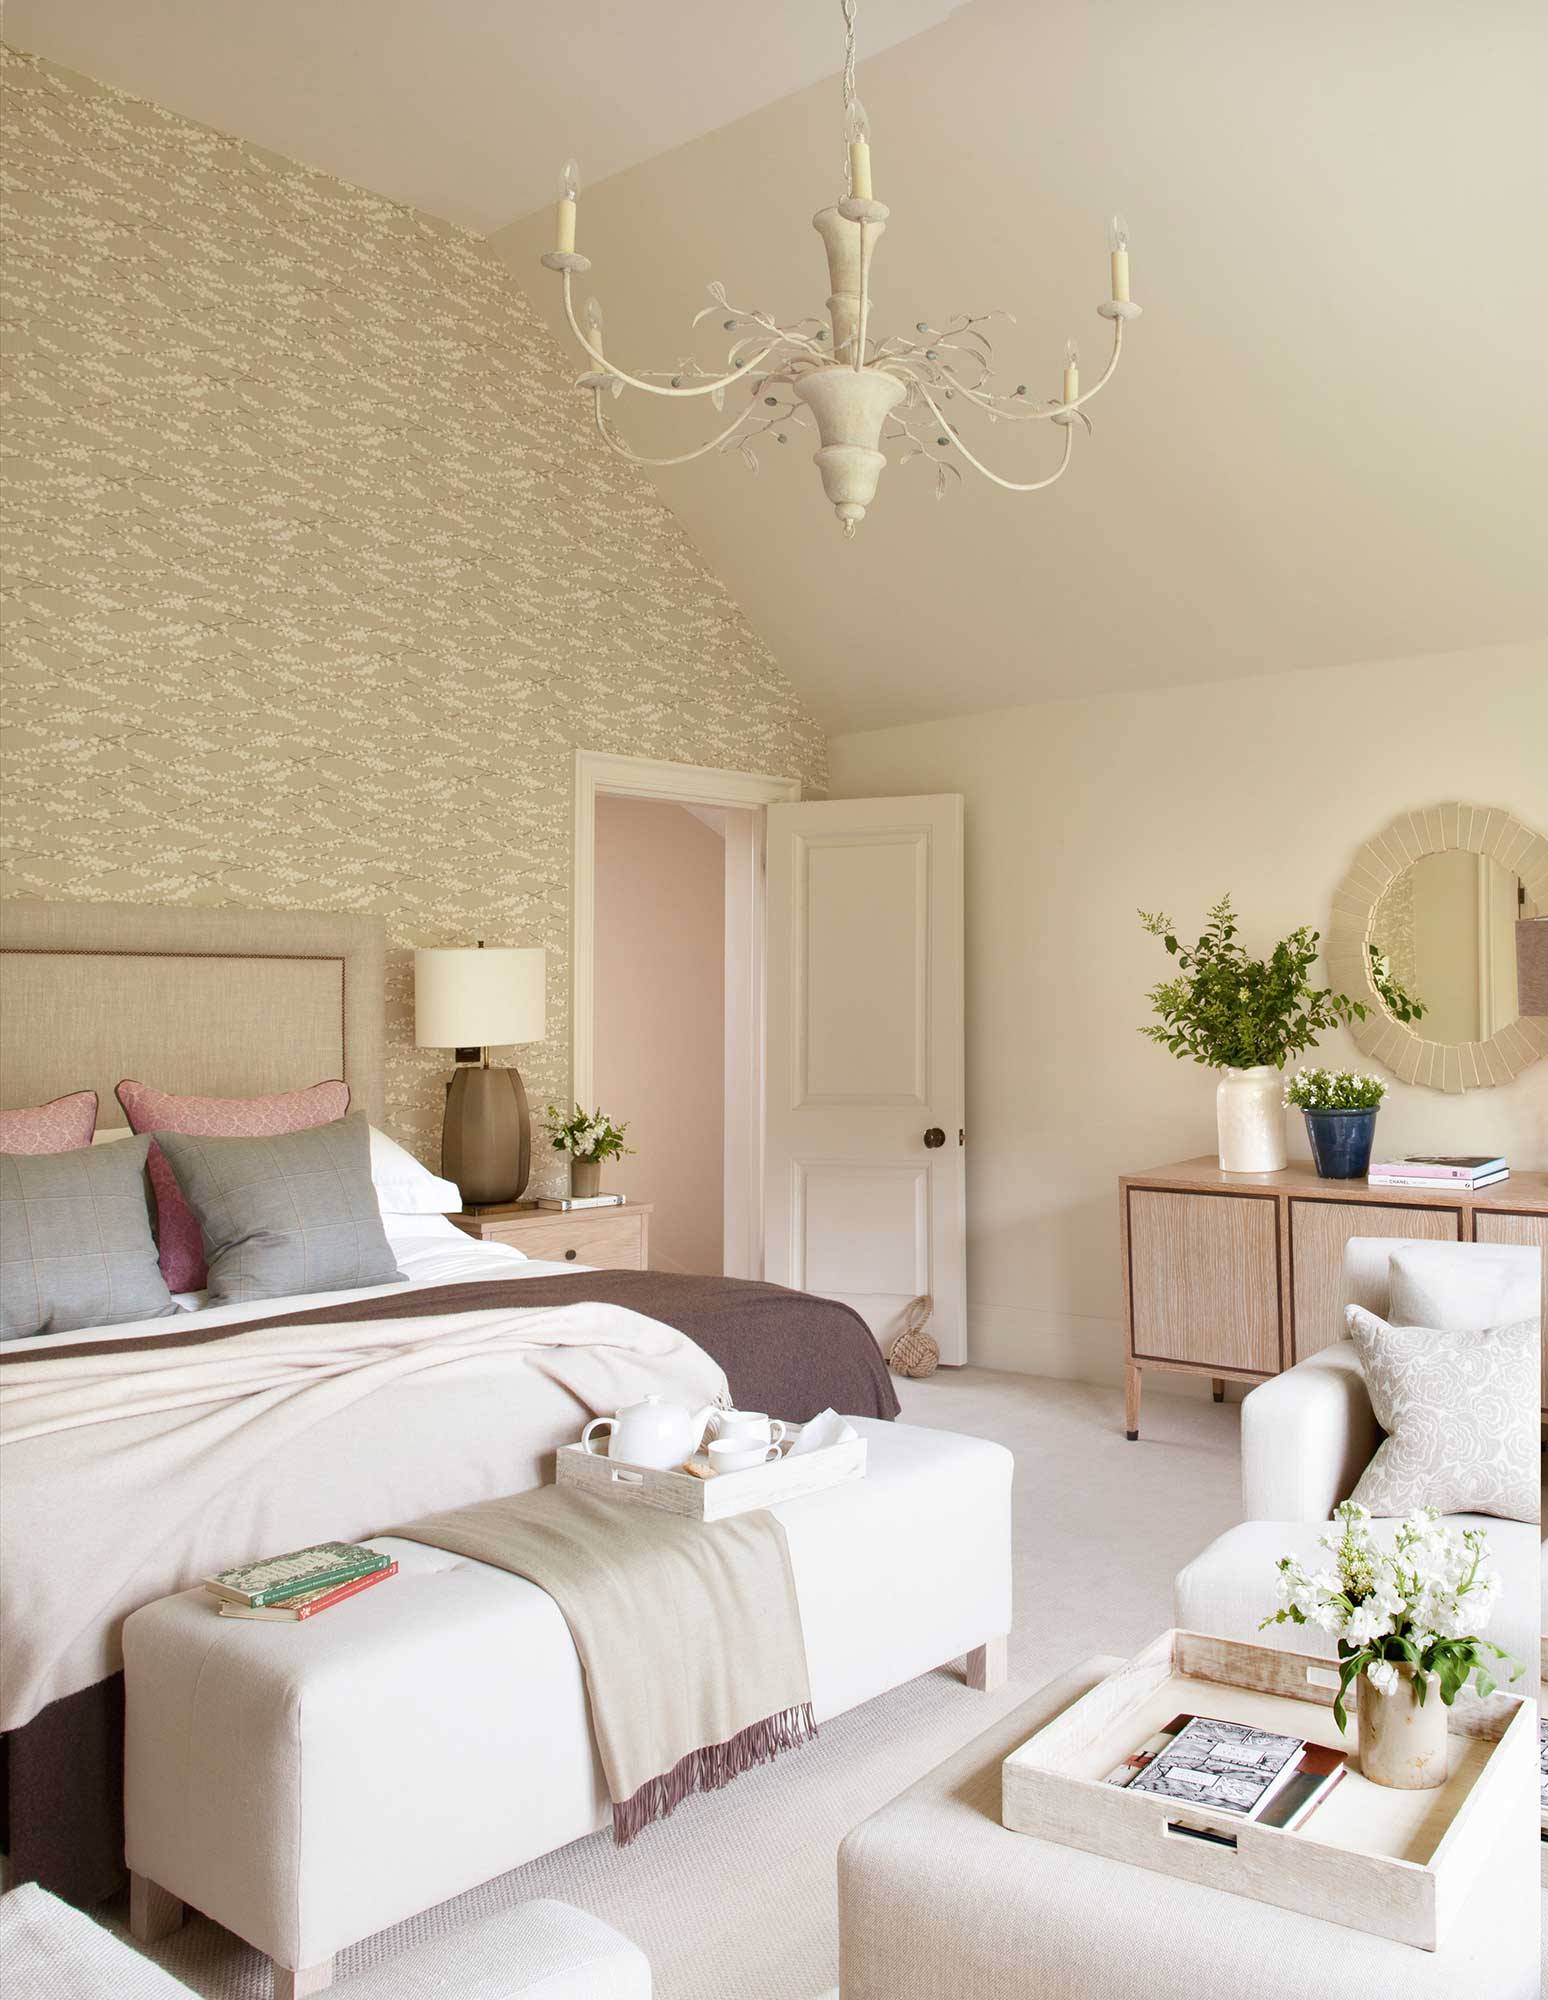 Dormitorio clásico en blanco con pared con papel pintado_00518230